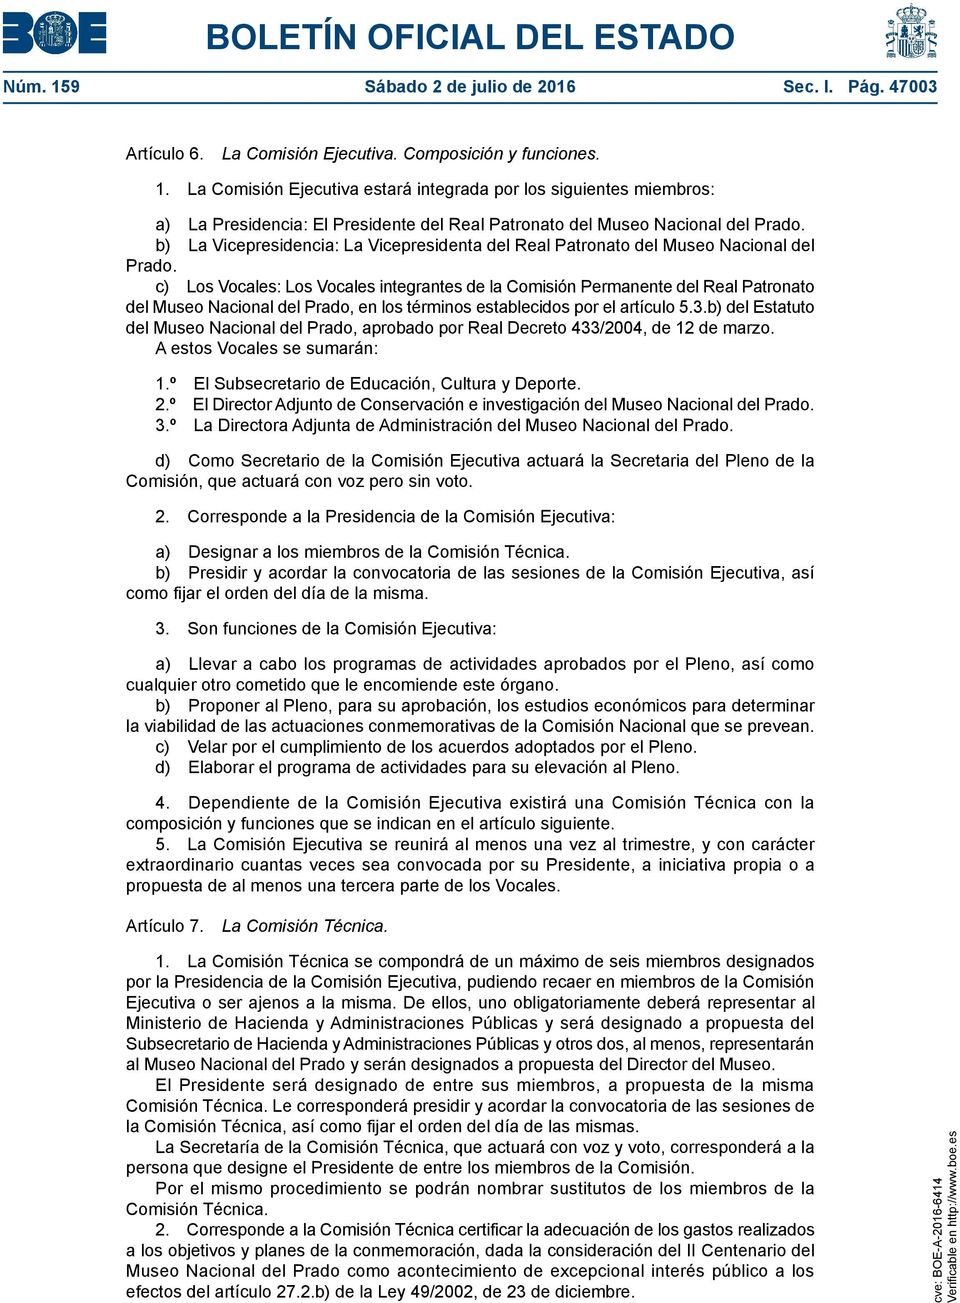 c) Los Vocales: Los Vocales integrantes de la Comisión Permanente del Real Patronato del Museo Nacional del Prado, en los términos establecidos por el artículo 5.3.